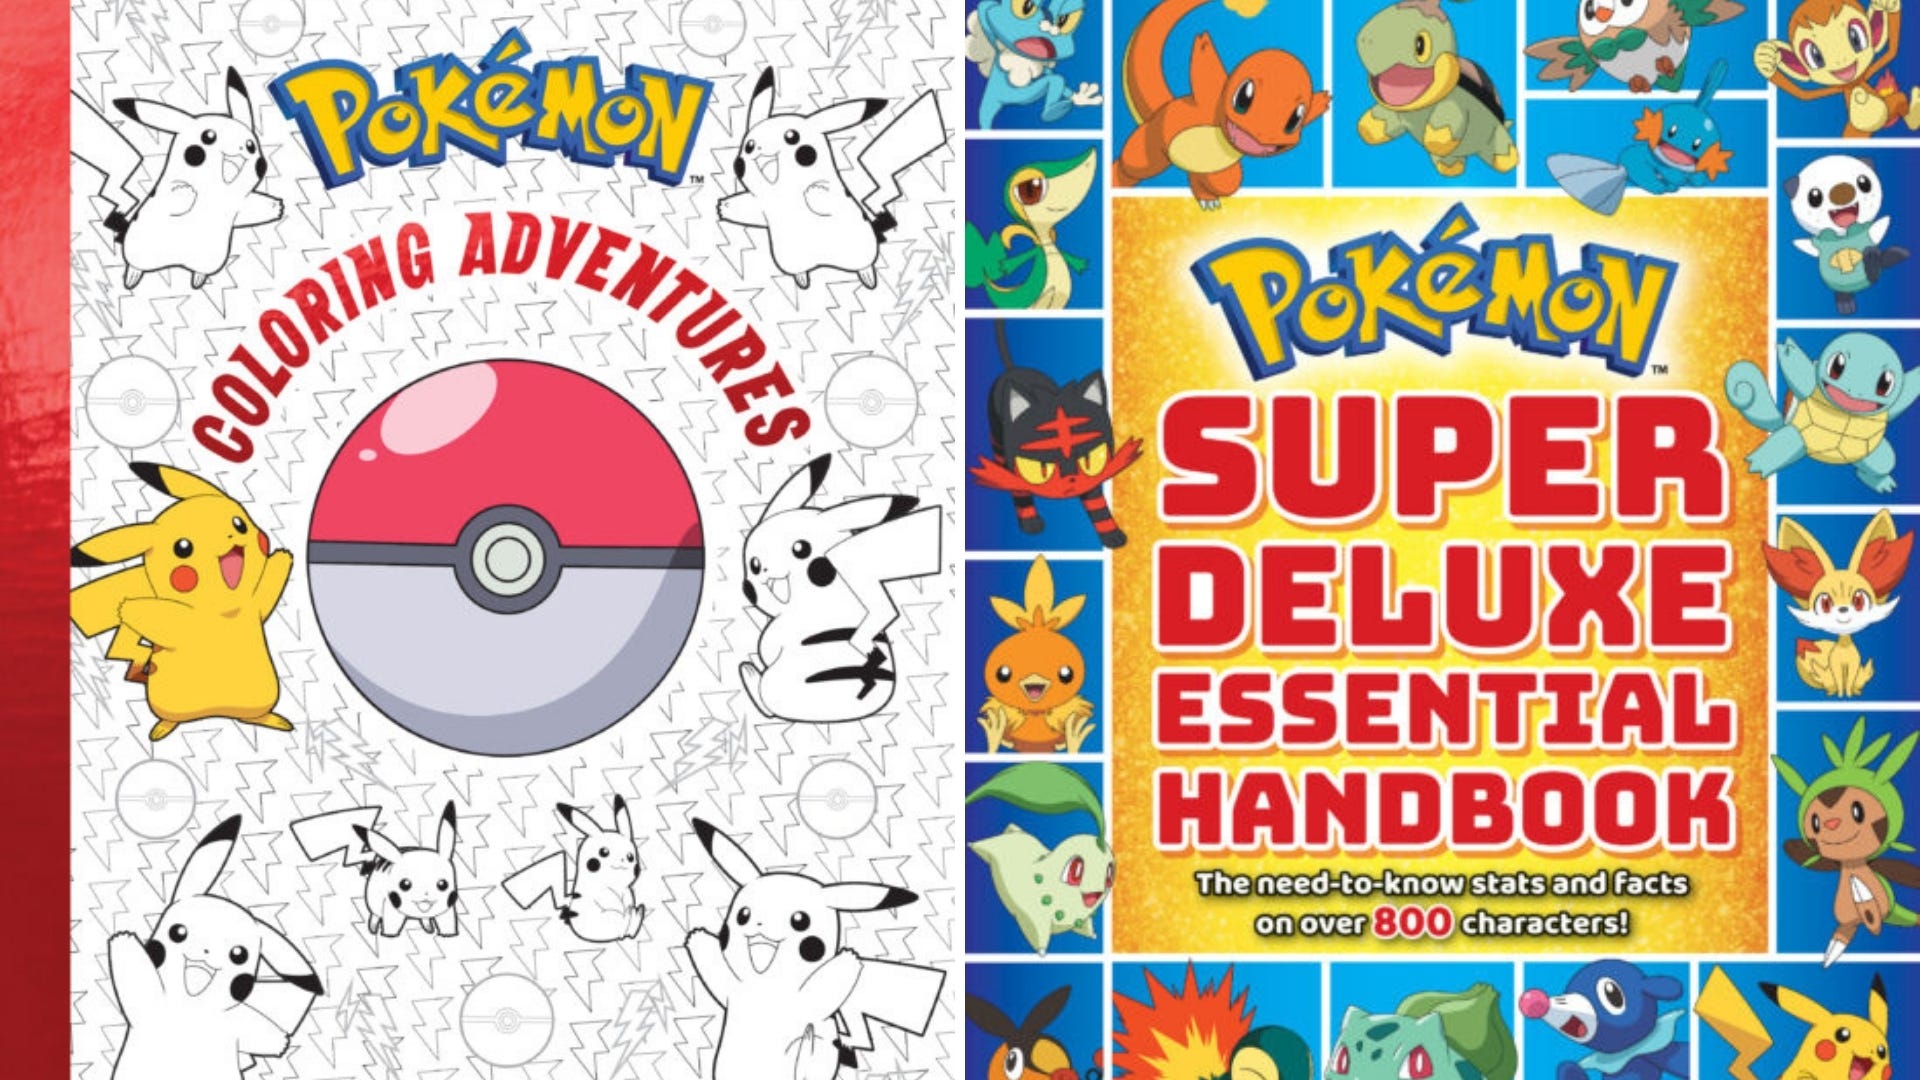 Coperta unei cărți de colorat Pokemon și coperta Pokemon Super Deluxe Essential Handbook.